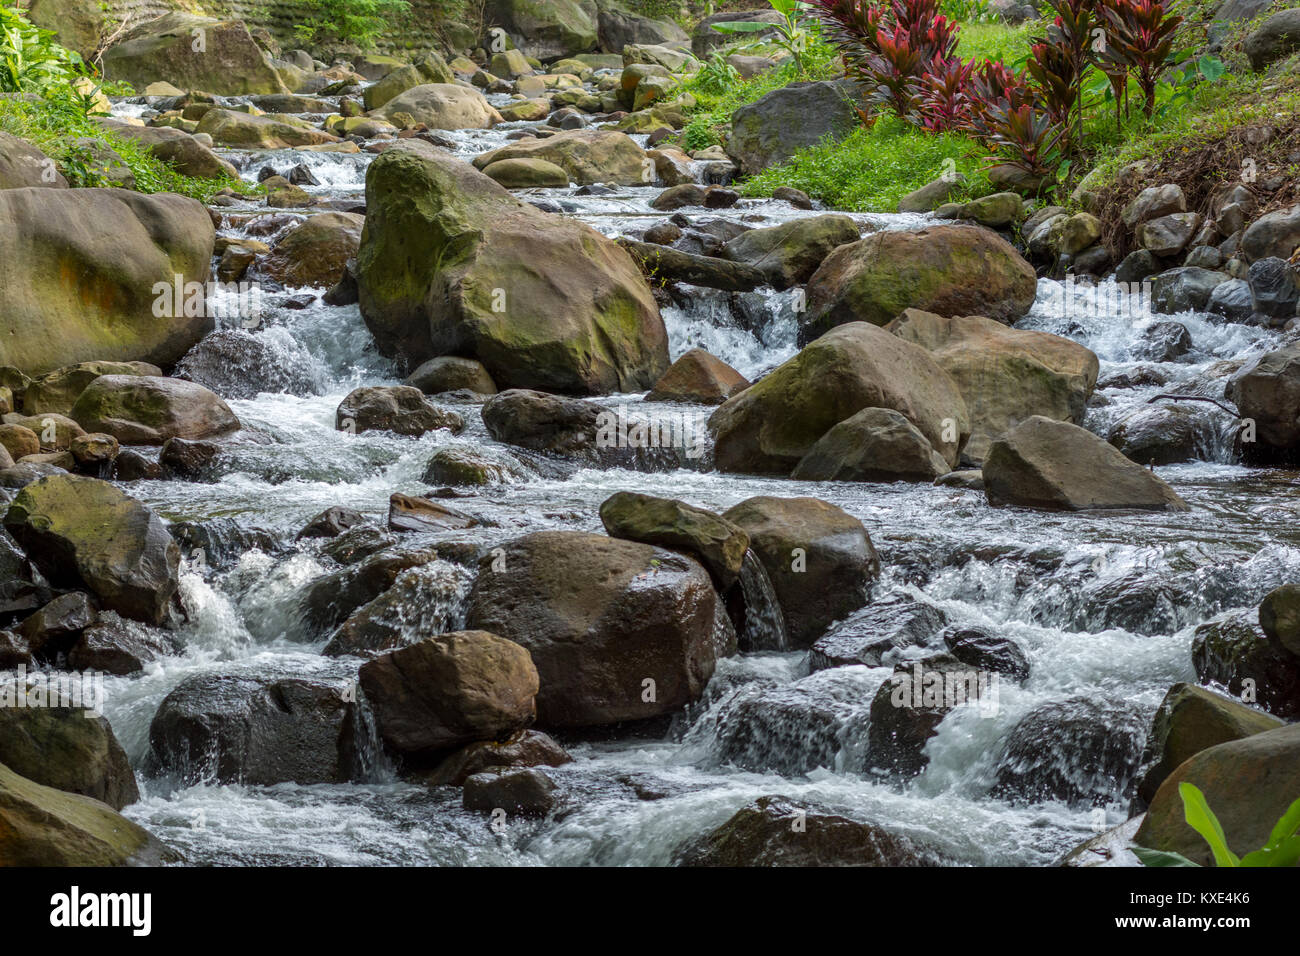 Une petite rivière / ruisseau coule rapidement sur de grosses roches et cailloux avec vert sain de la végétation dans l'arrière du terrain. Banque D'Images